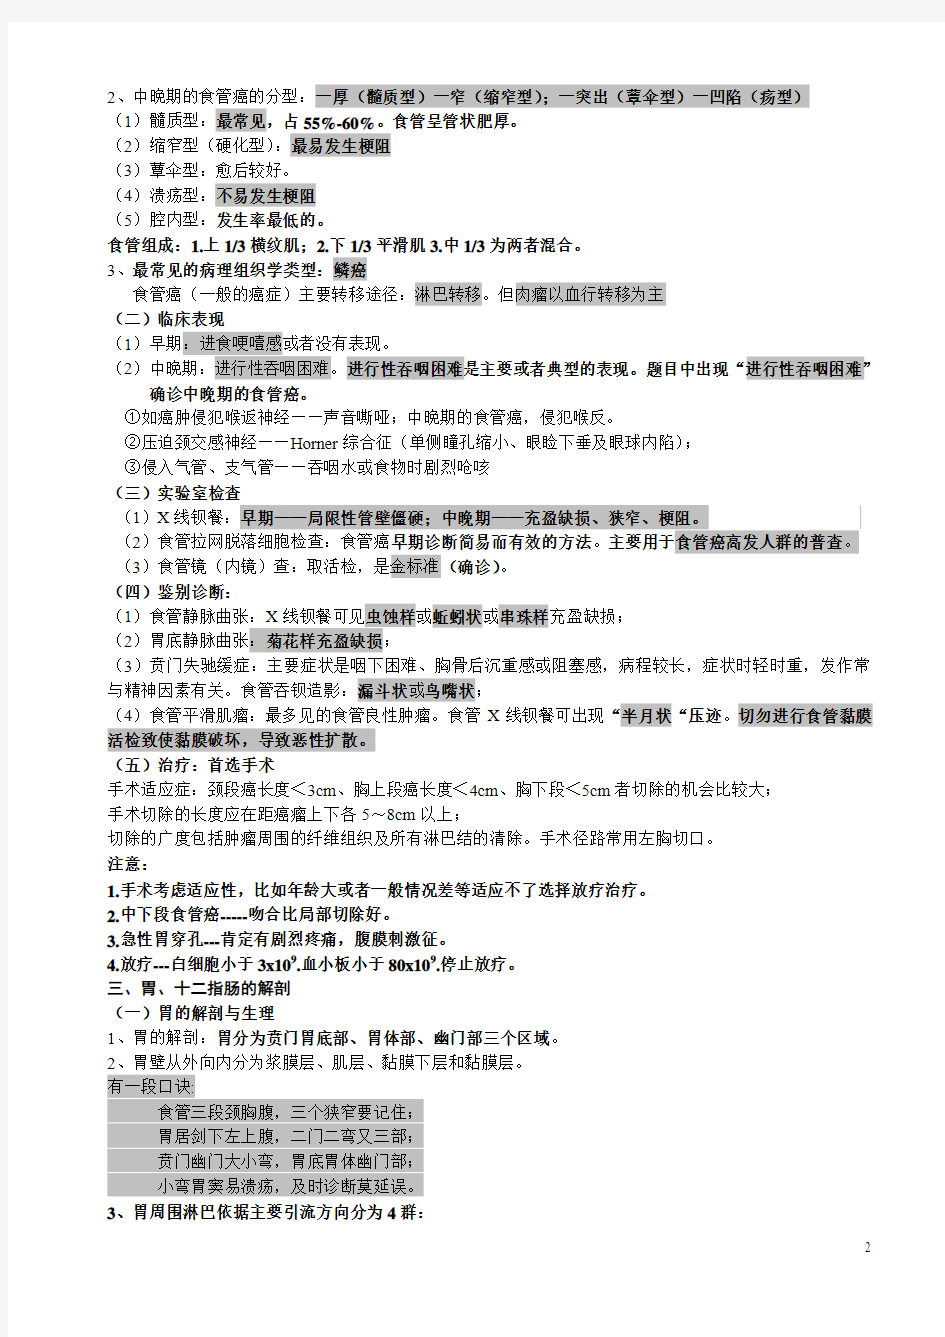 2011年消化系统笔记(共10讲)